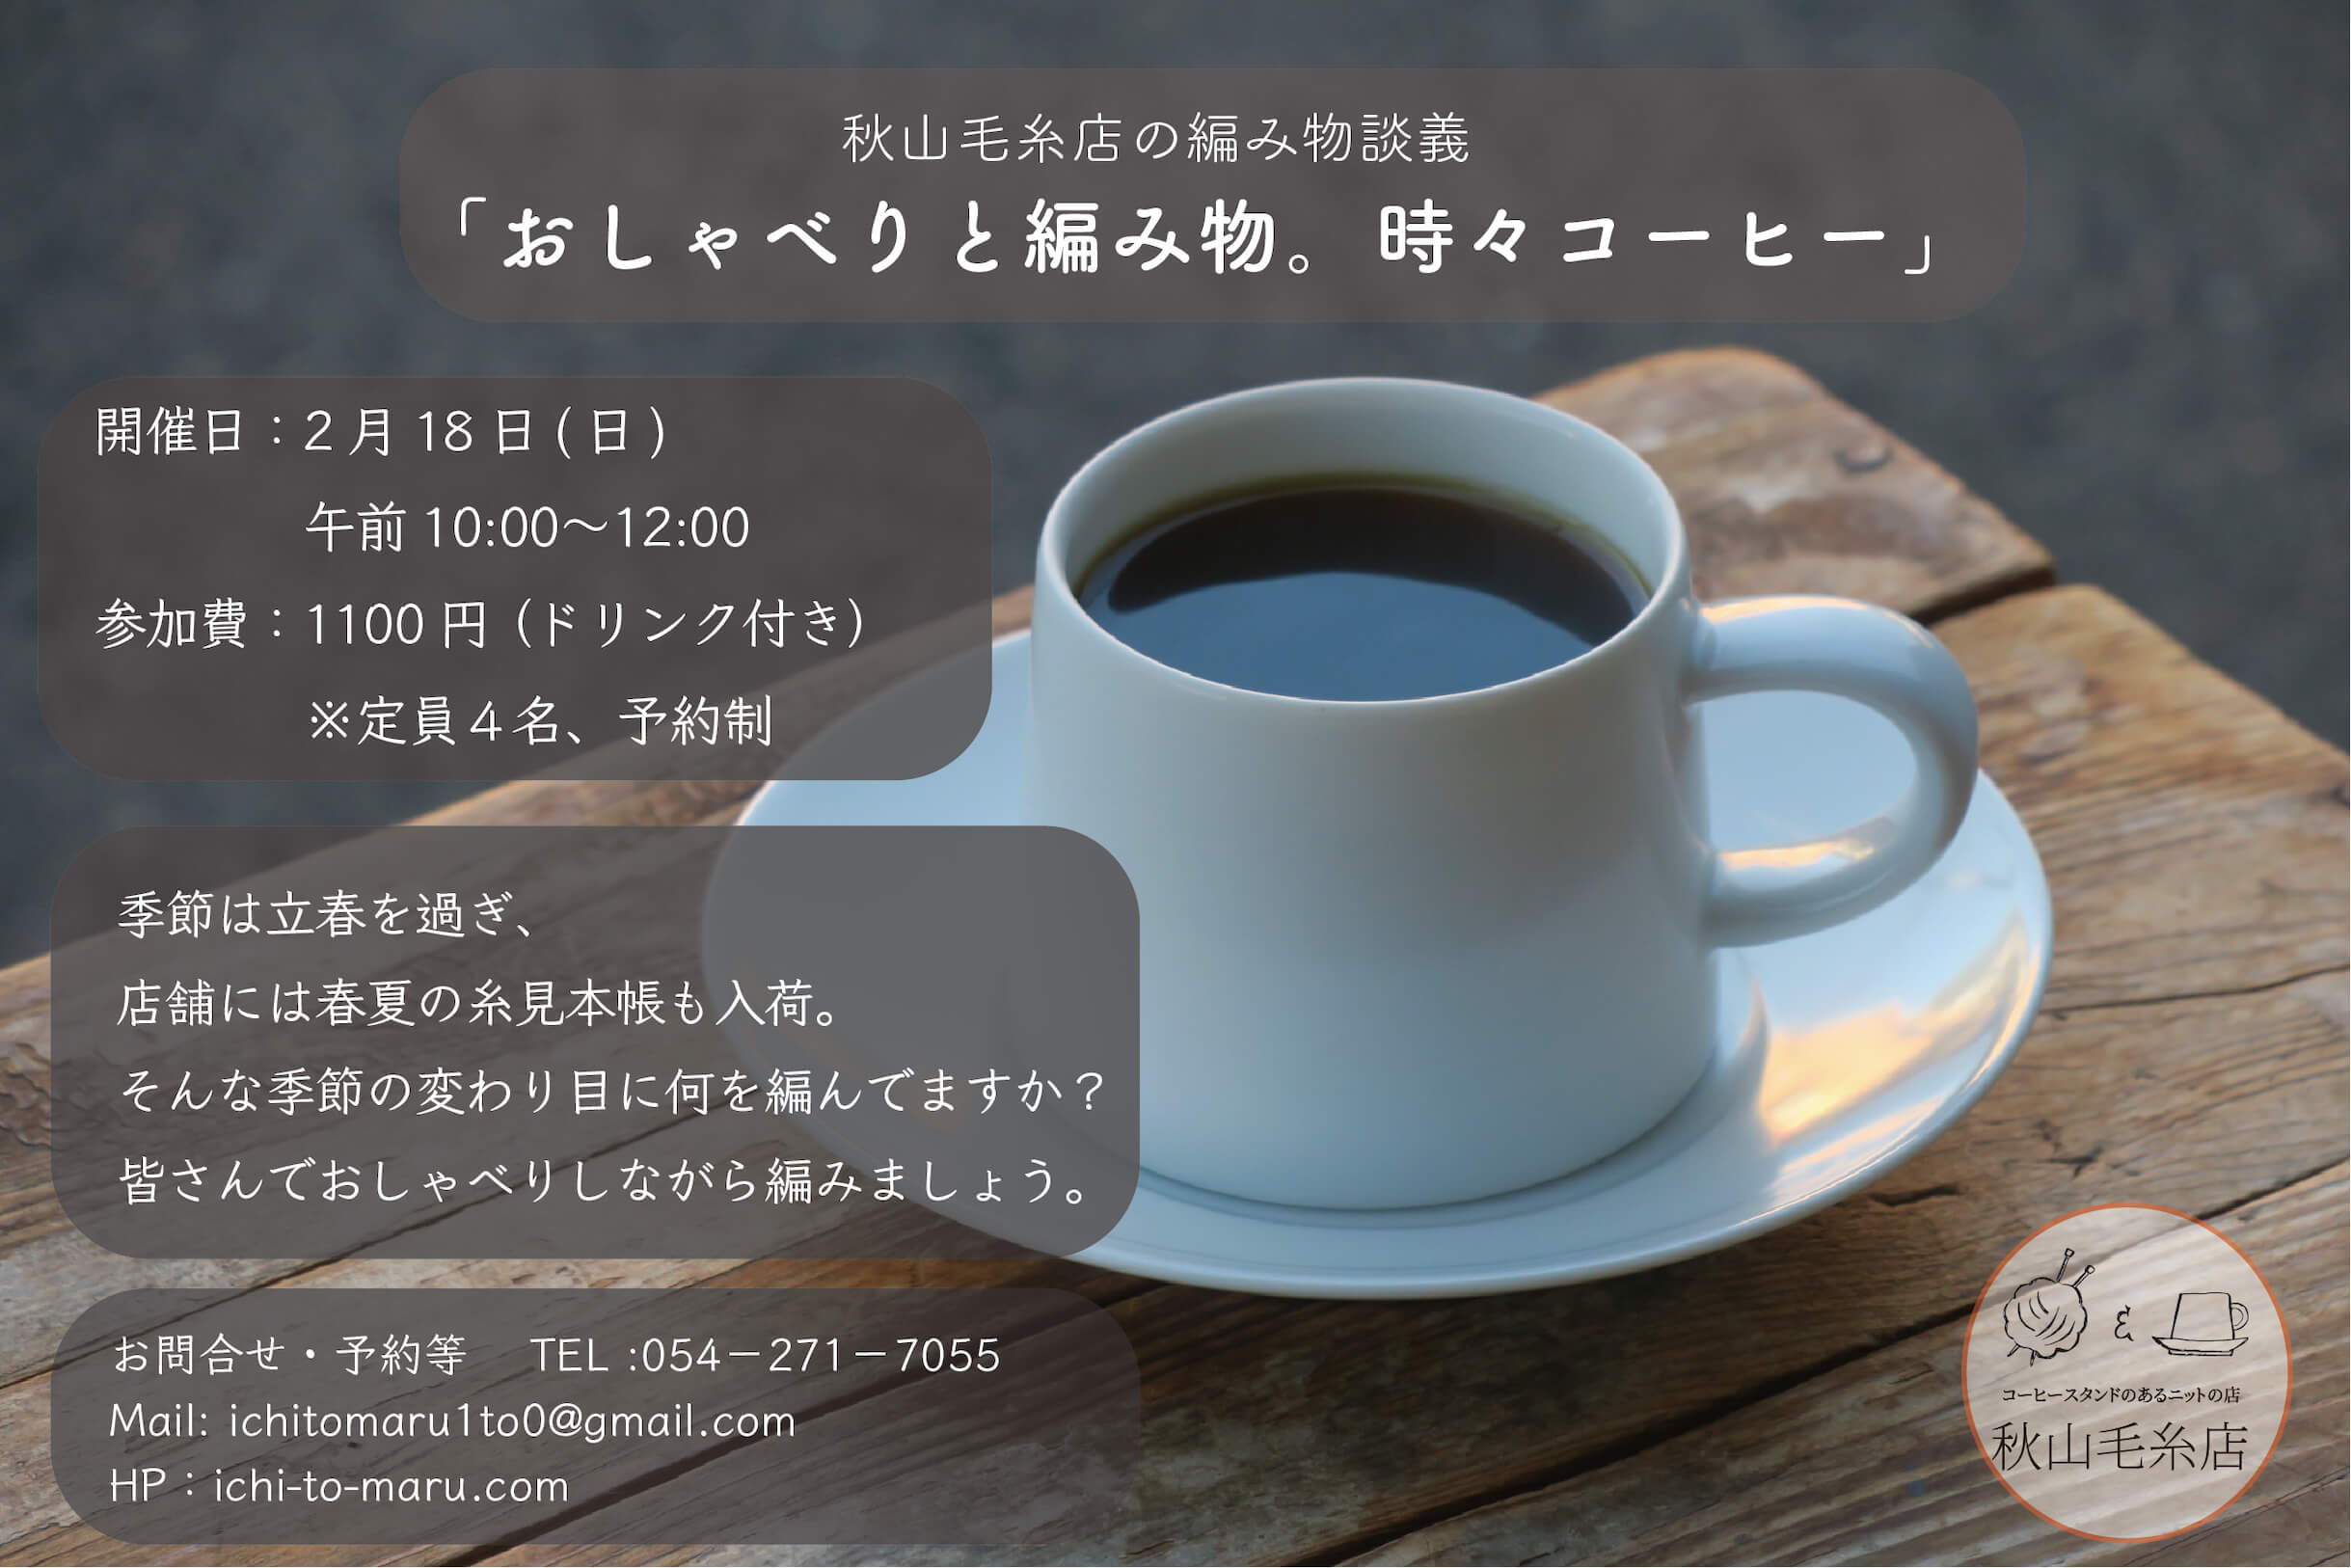 [イベント終了] 2月18日(日)は編み物談義「おしゃべりと編み物。時々コーヒー」